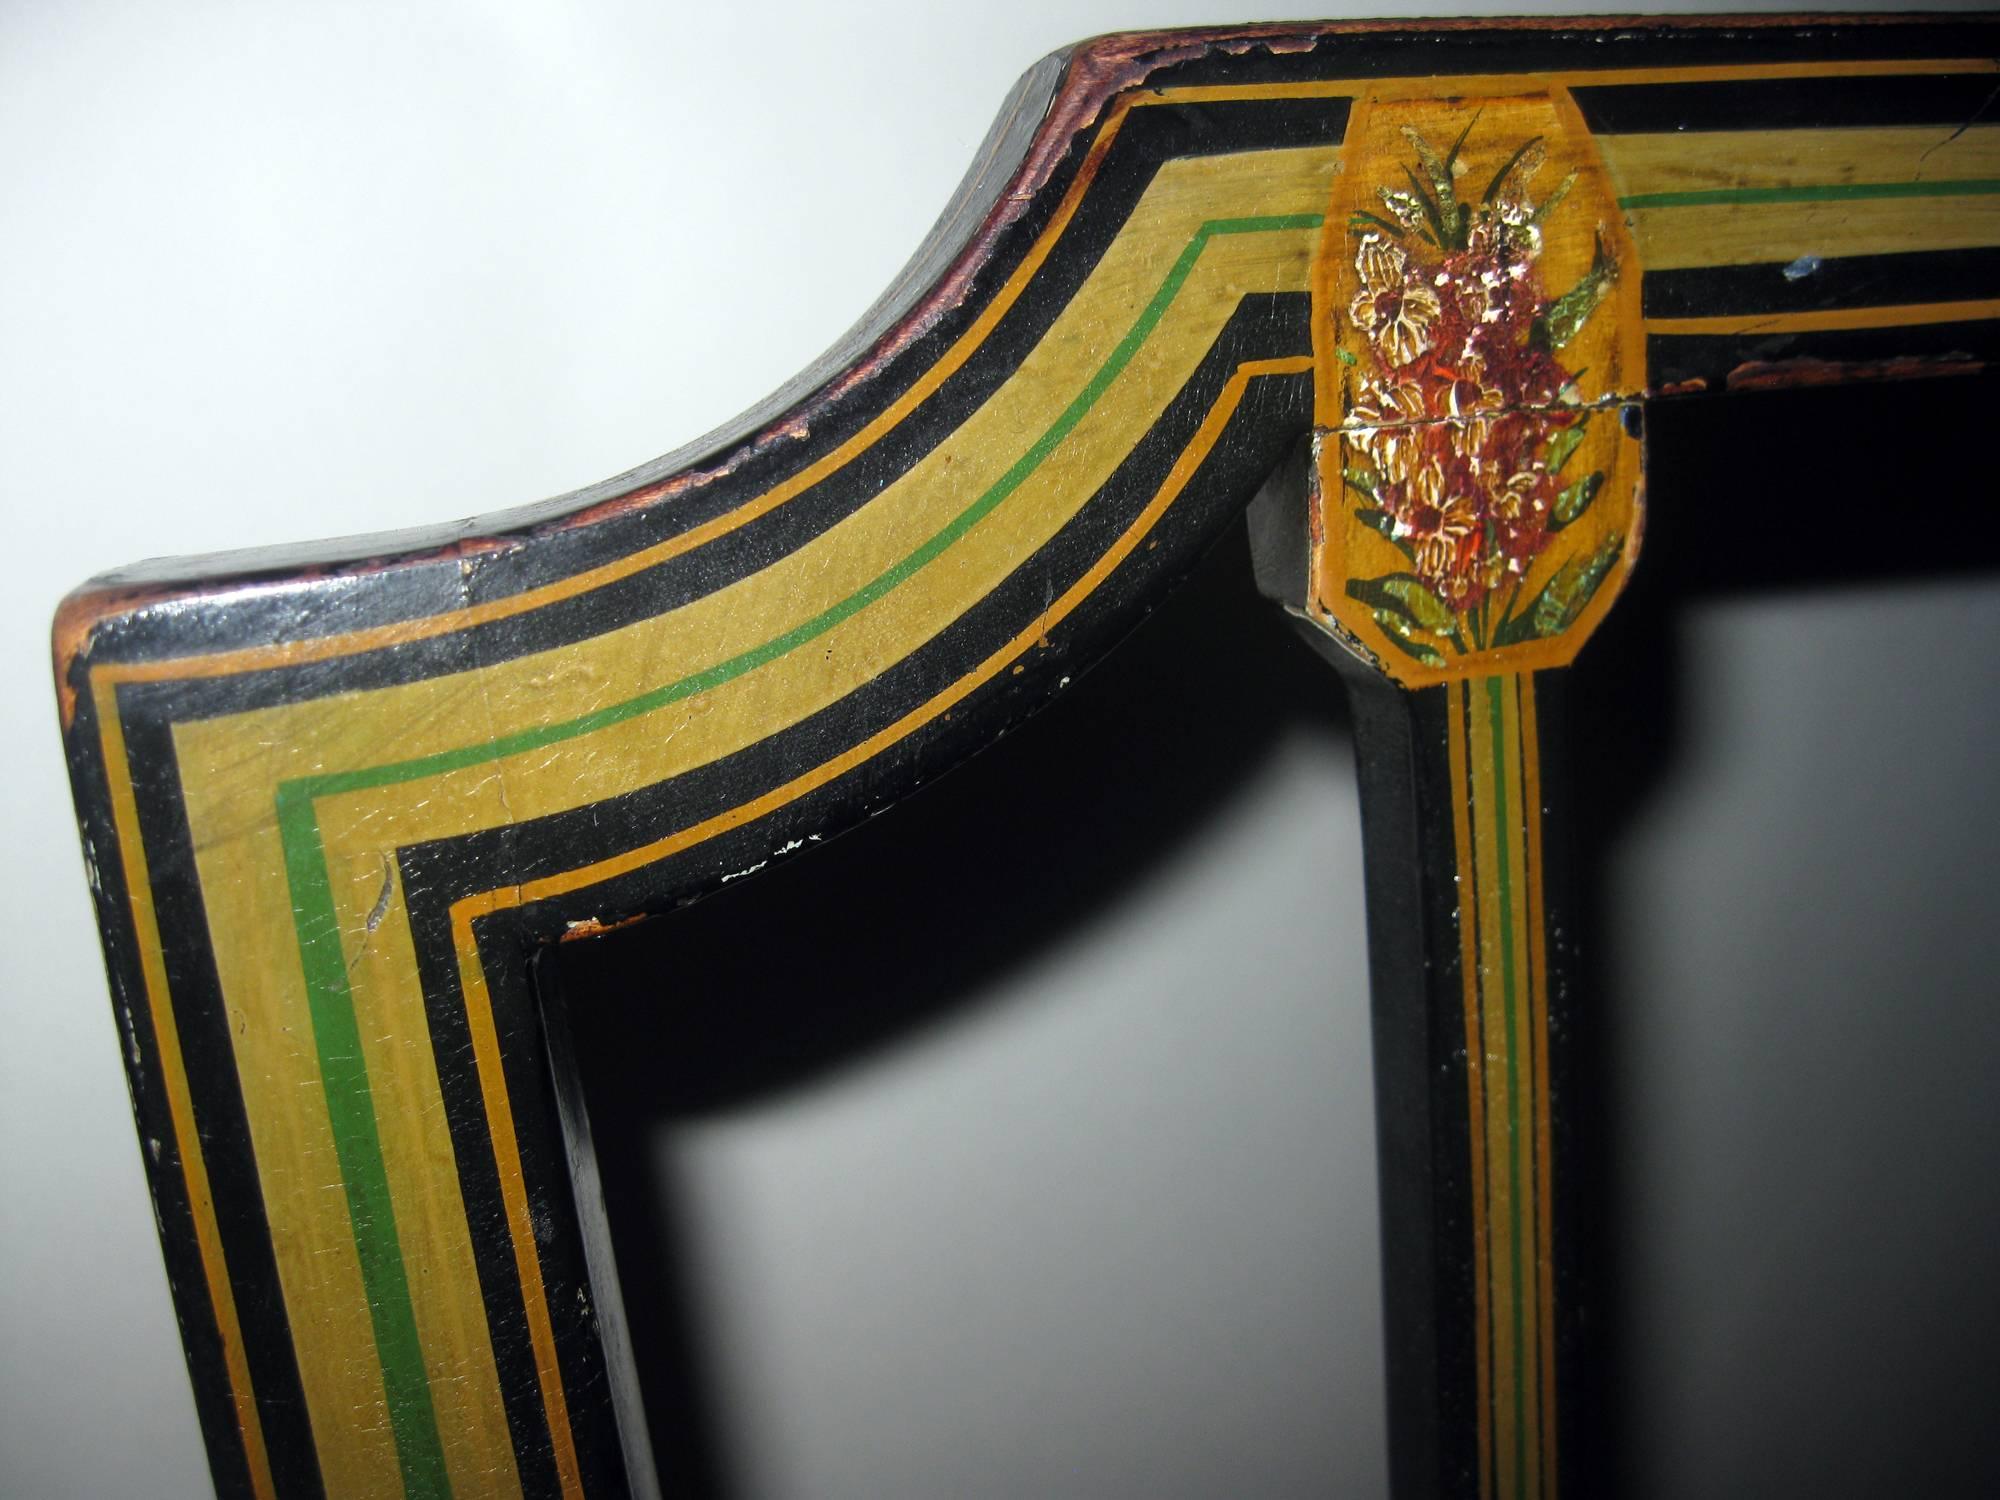 Beistellstuhl aus bemaltem Hartholz aus dem frühen 19. Jahrhundert mit Spatenfüßen. Handbemalt in schönen Farben mit einem Blumen-, Lyra- und Linienmotiv. Wunderschön gealterte originale und unrestaurierte Lackierung. Der verstärkte Sitz ist mit